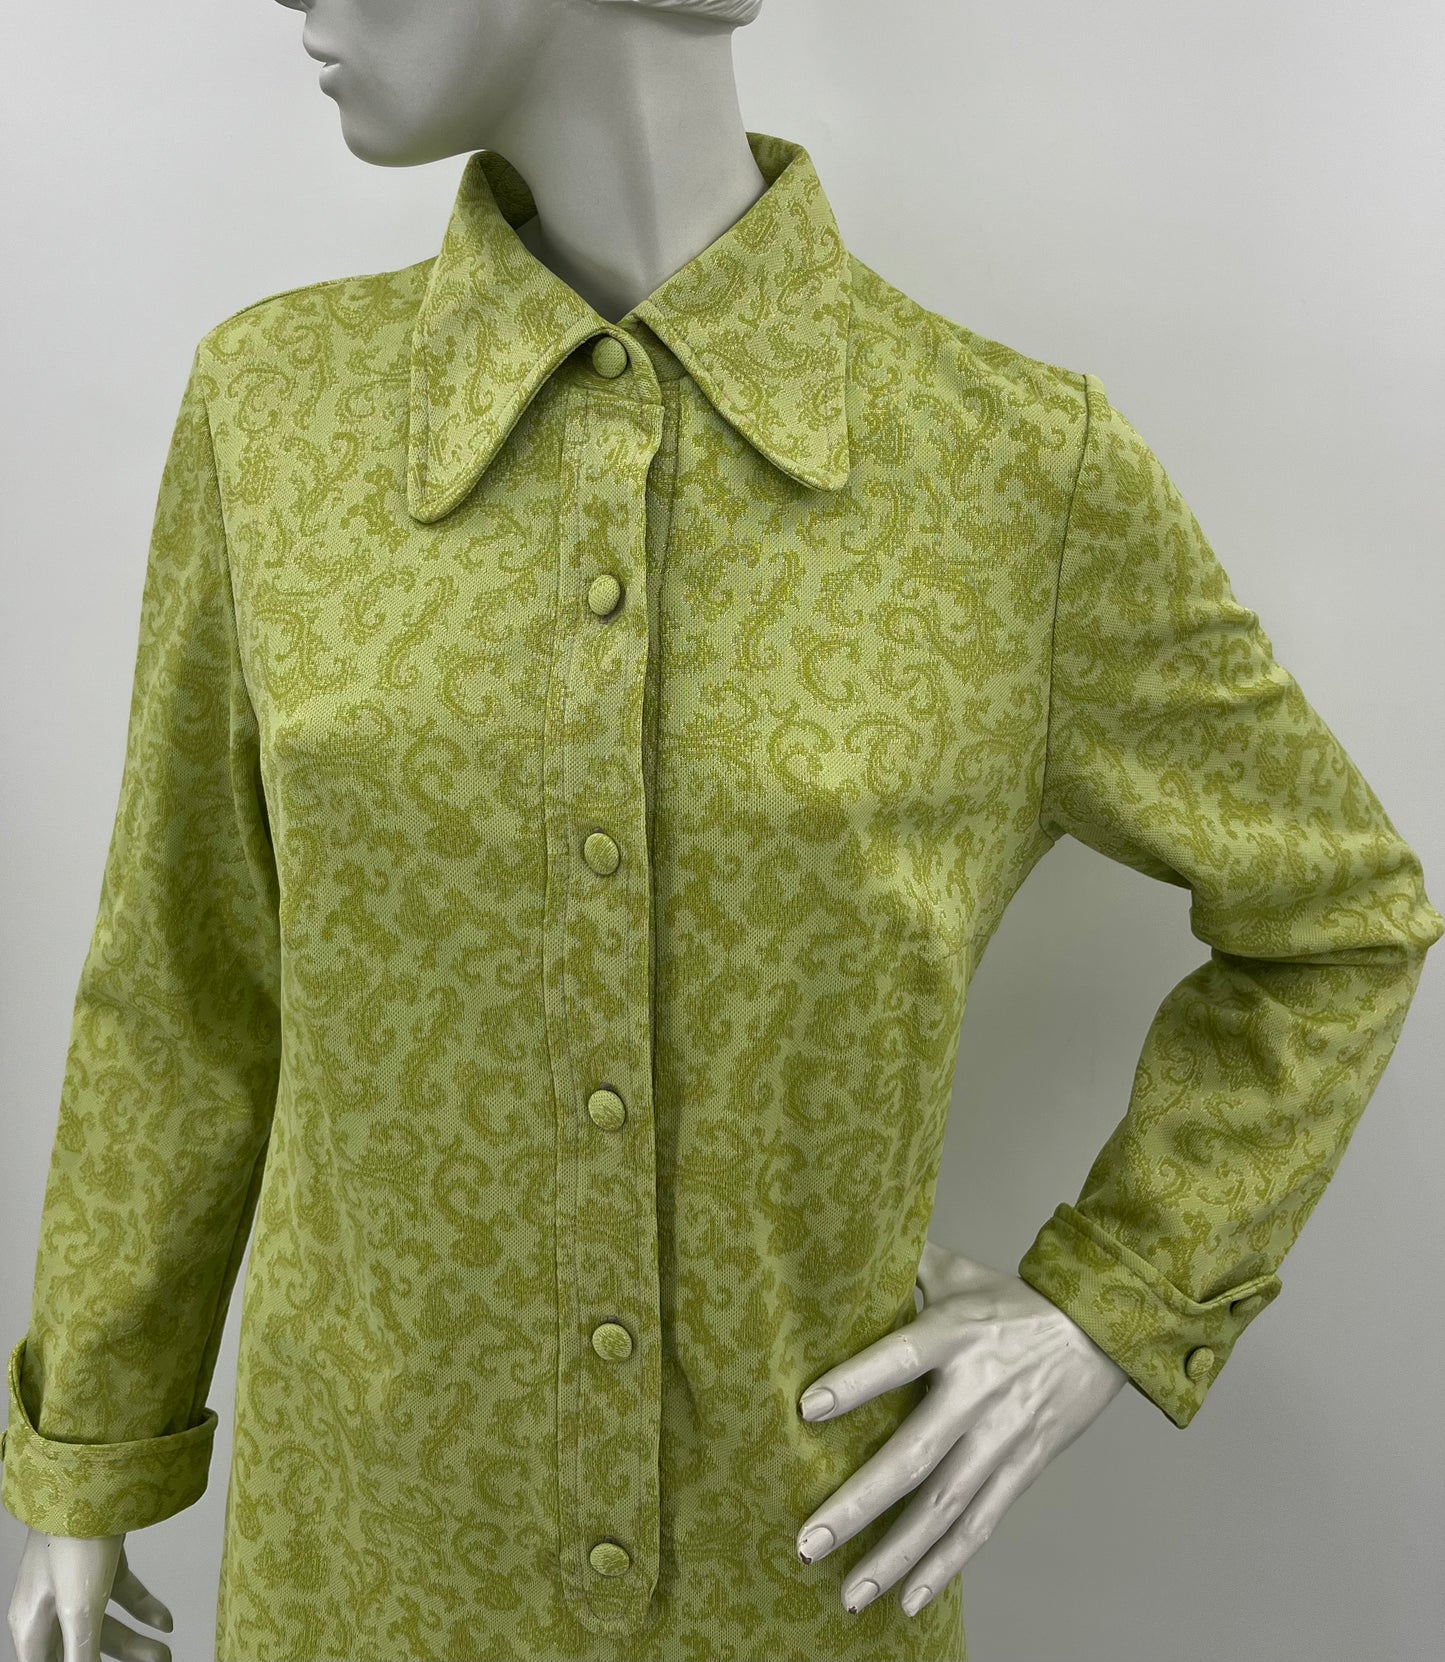 Vaaleanvihreä mekko, 70-luku, koko 38-40